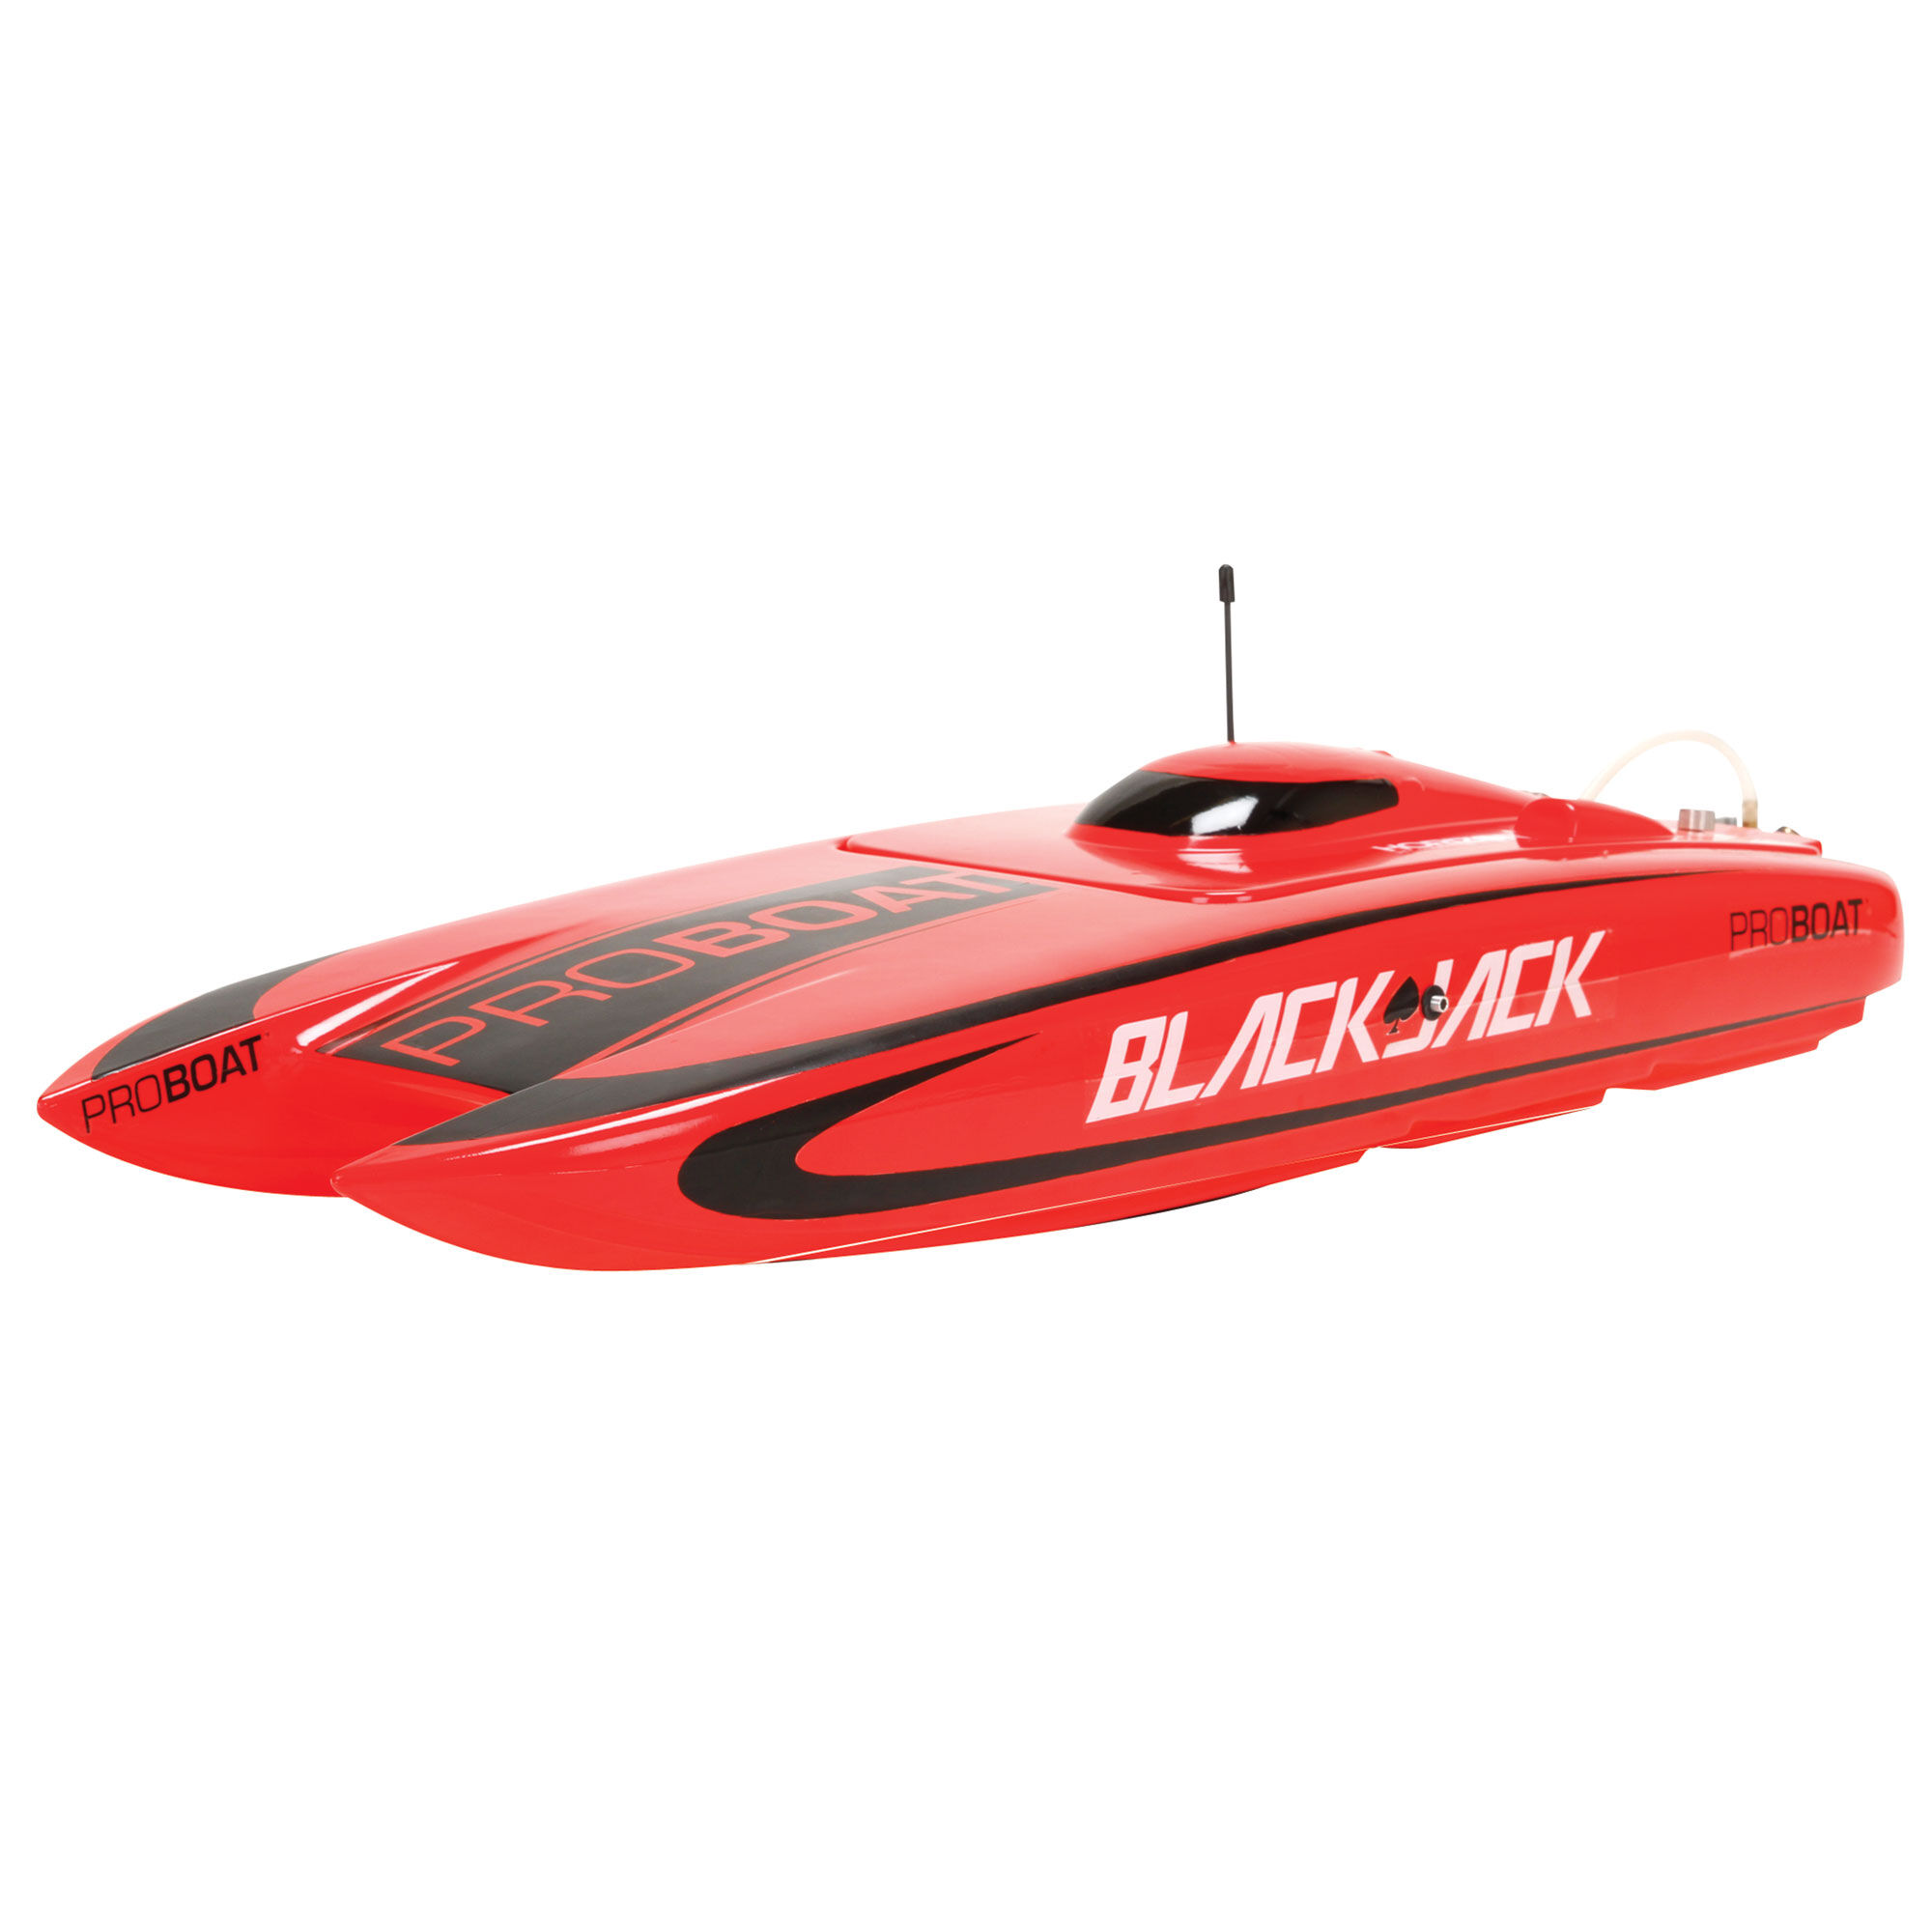 blackjack 24 rc boat